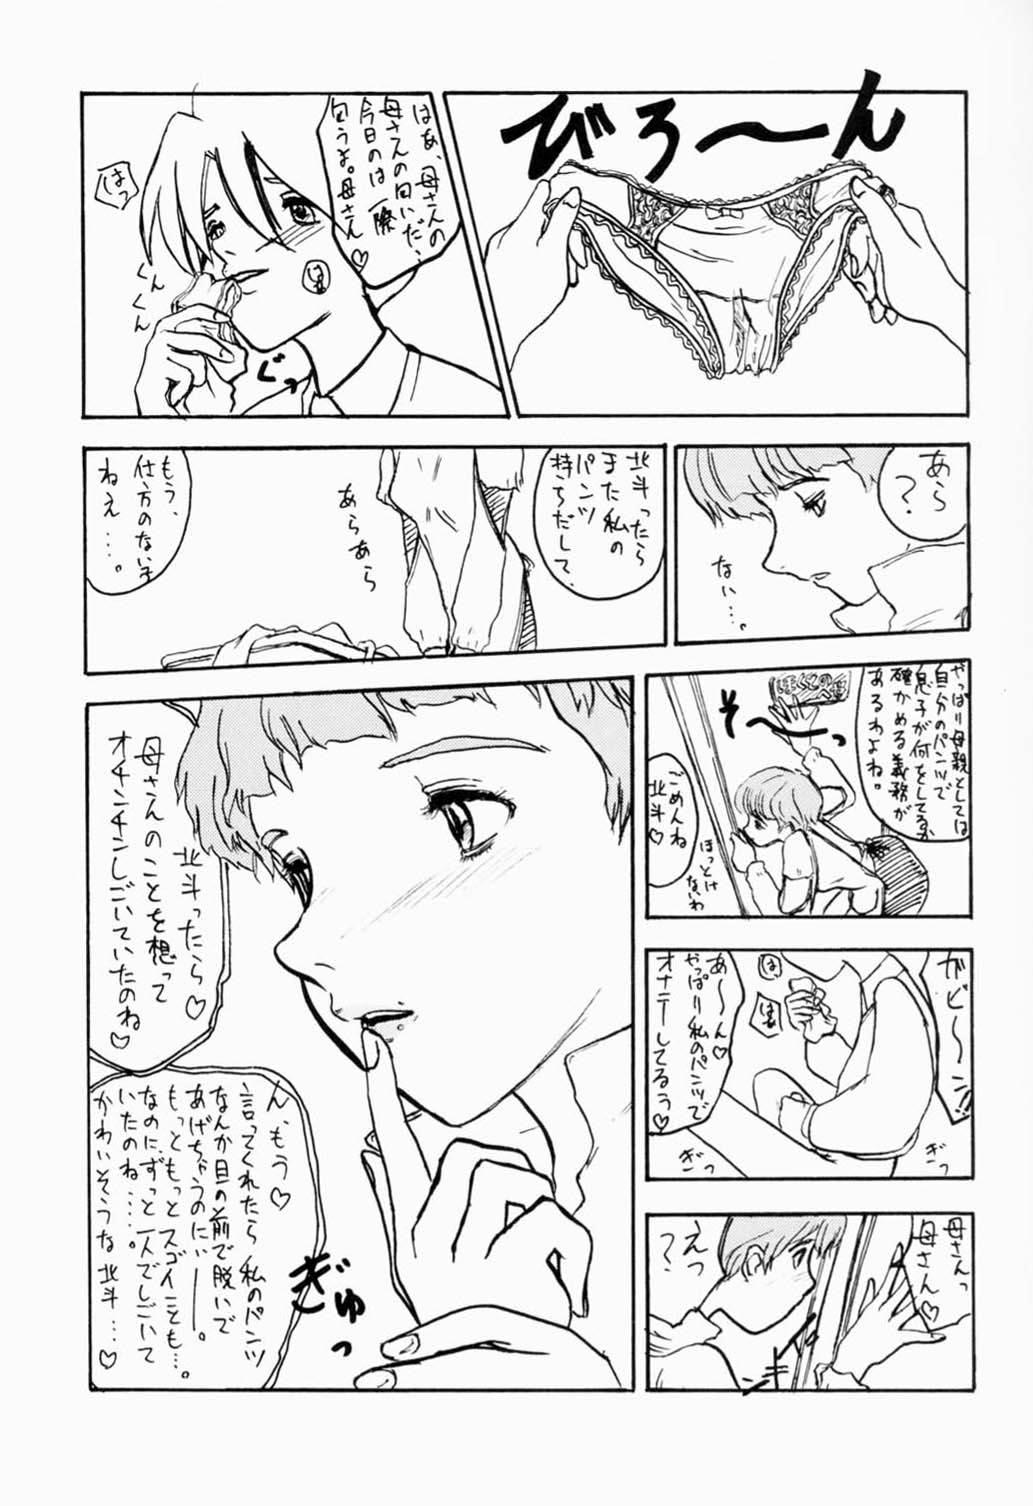 Horny Sluts Hokuto, Anata wa Doko he Ochitai? Kaasan to Nara Doko he Demo.... - Gear fighter dendoh Glasses - Page 4